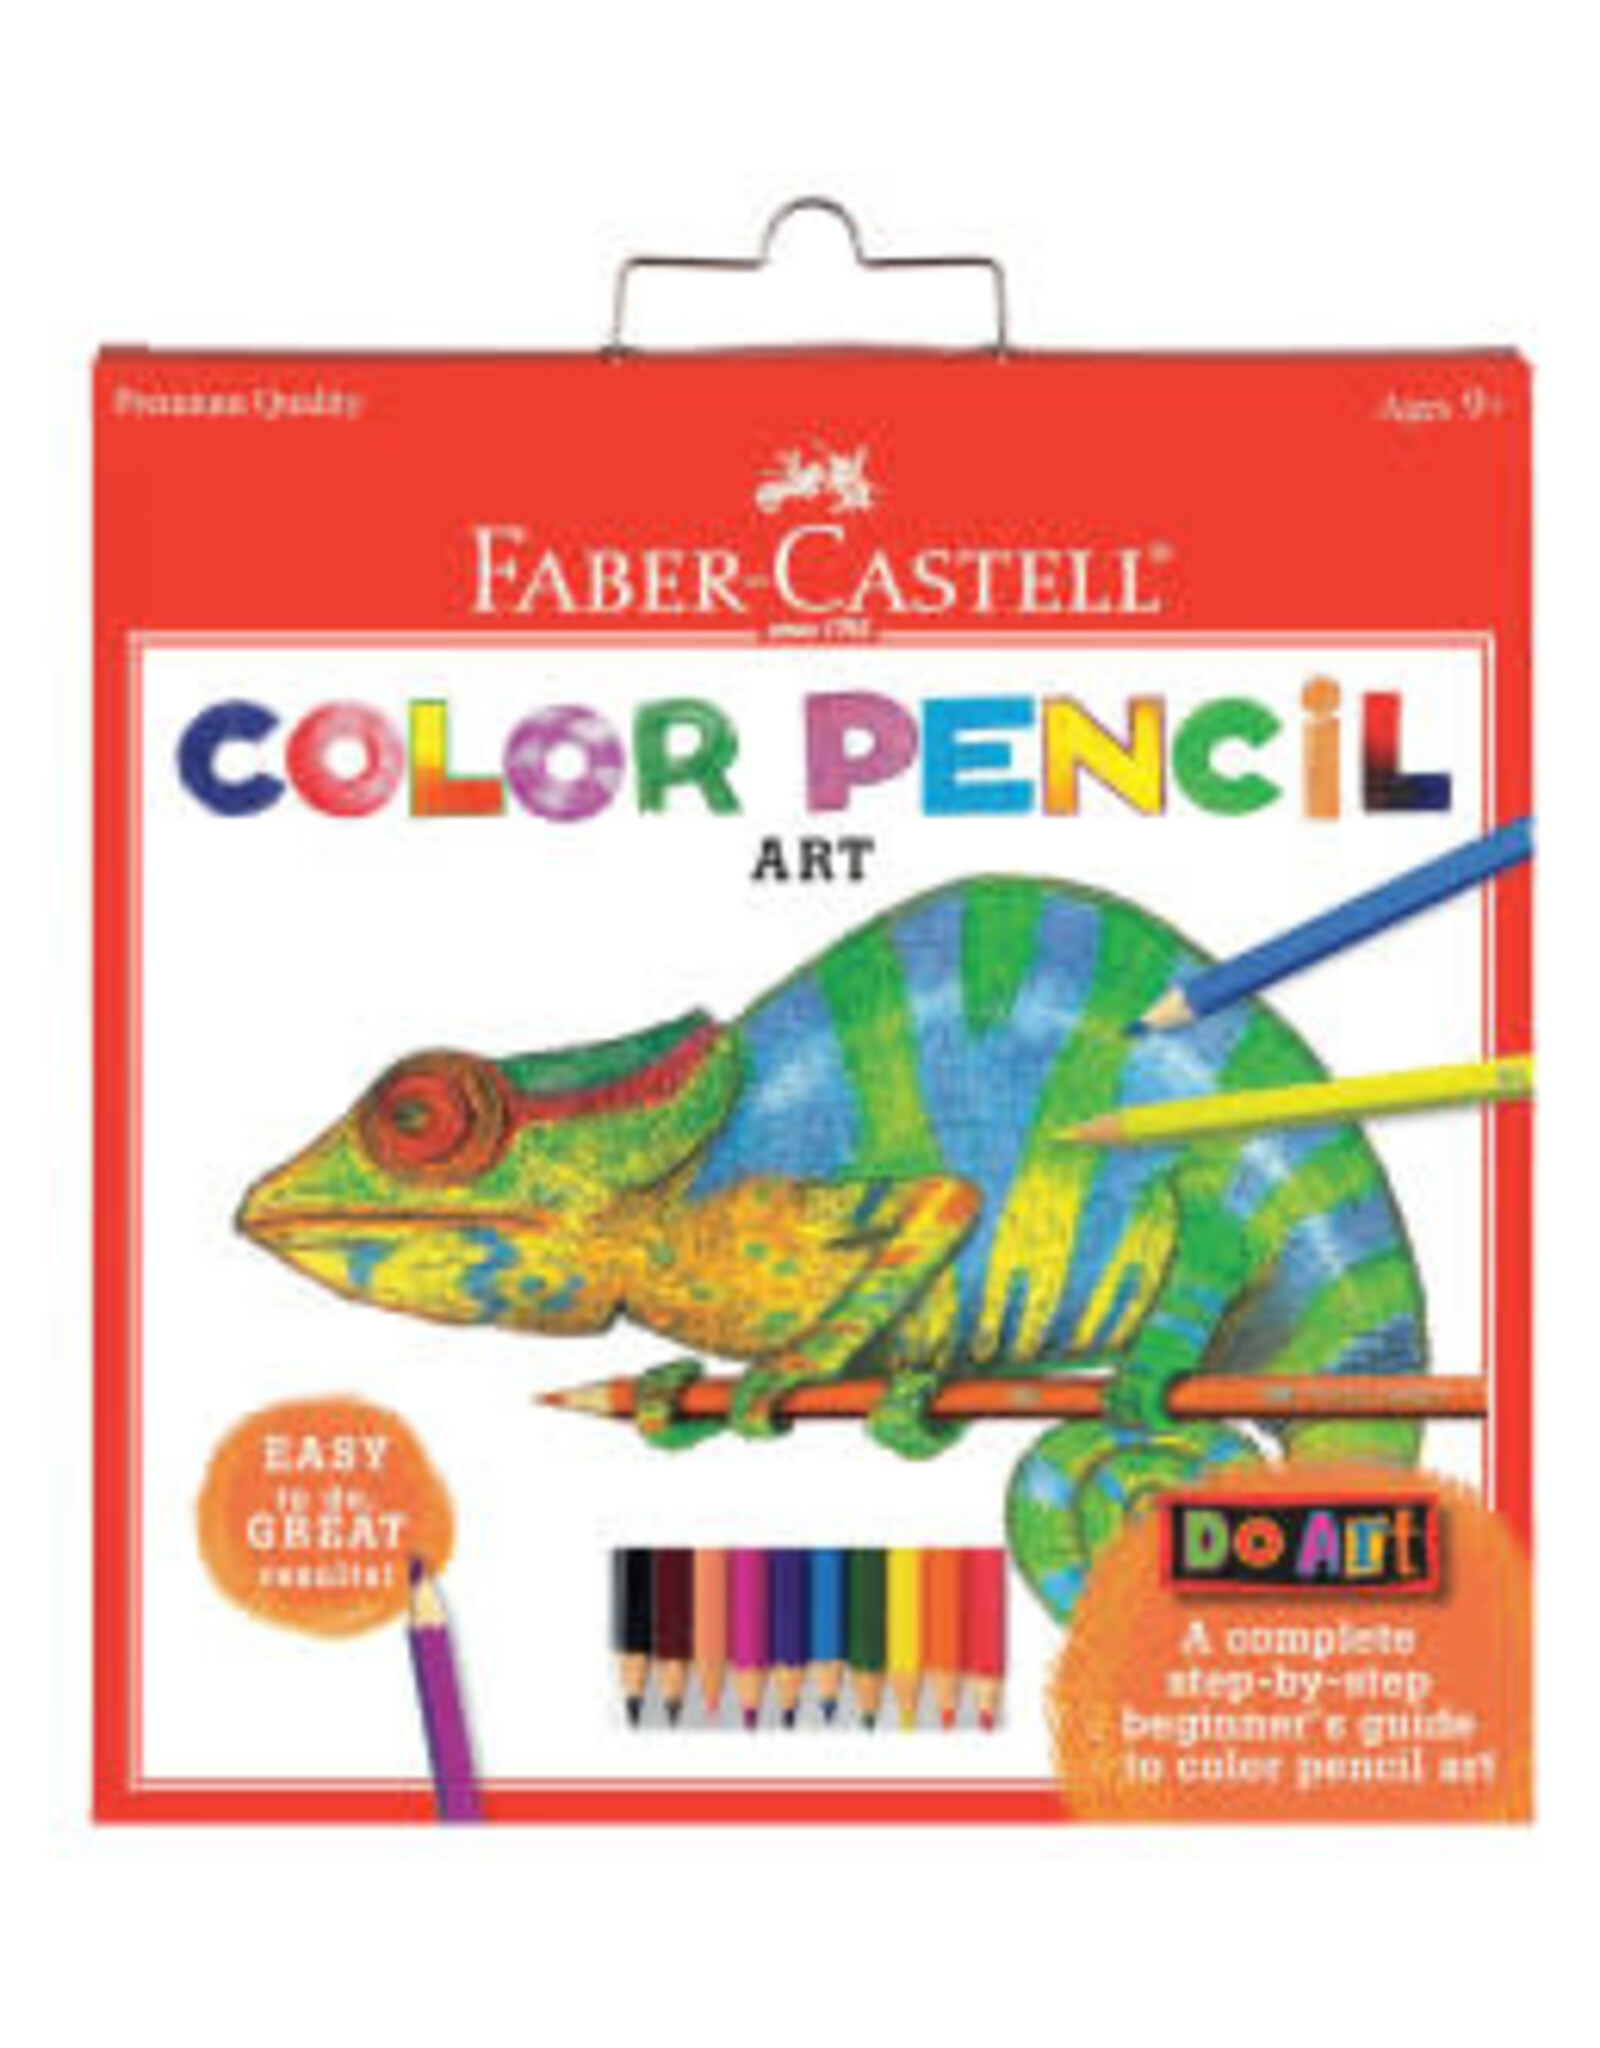 Faber-Castell Do Art Color Pencil Art